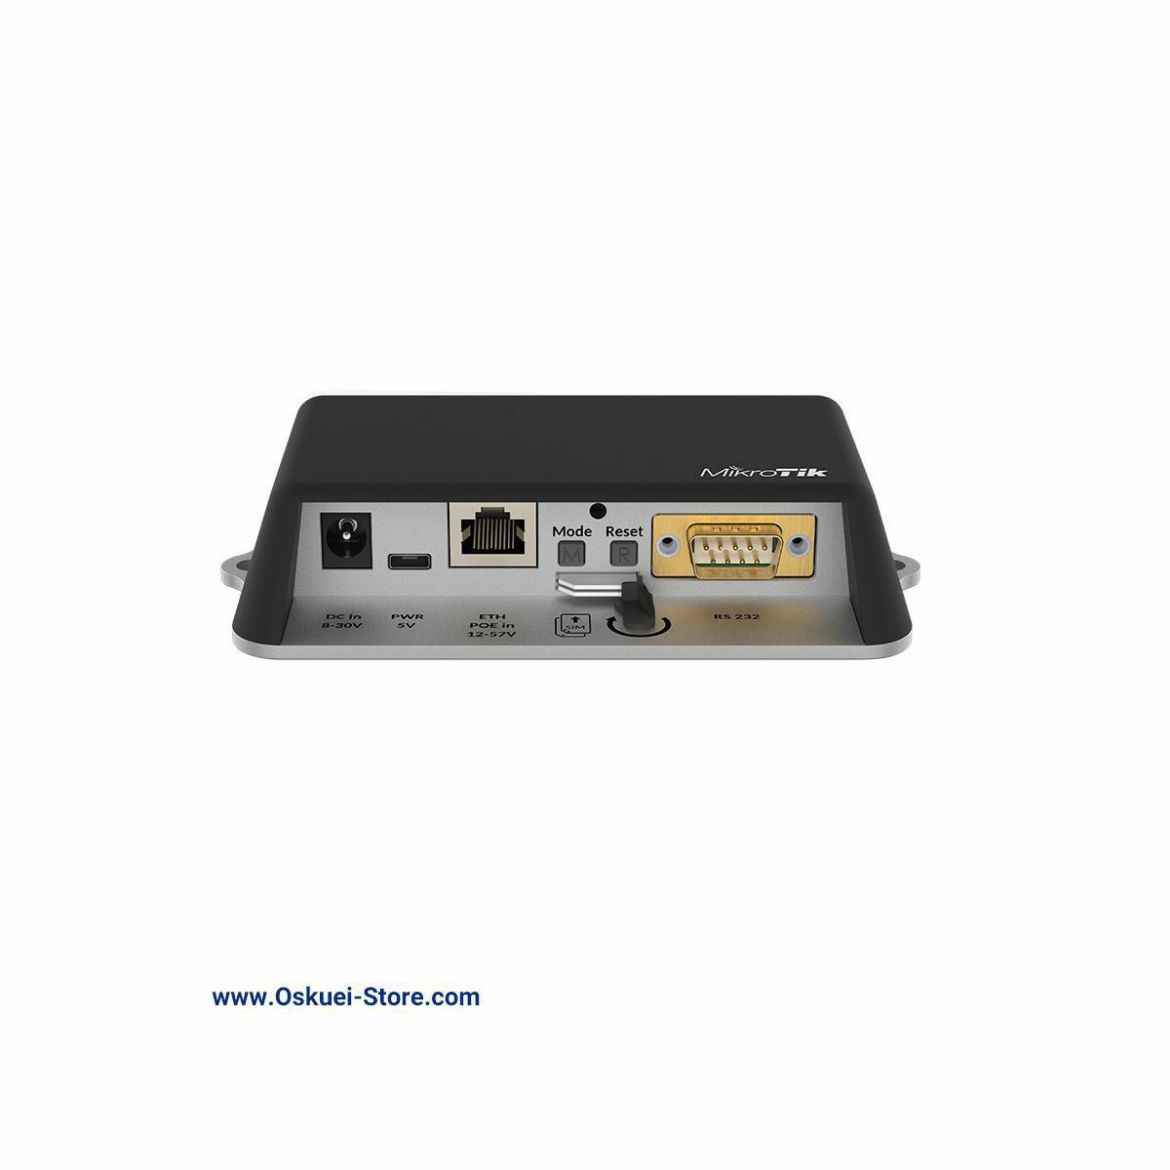 MikroTik RB912R-2nD-LTm&R11e-LTE Wireless Access Point Ports